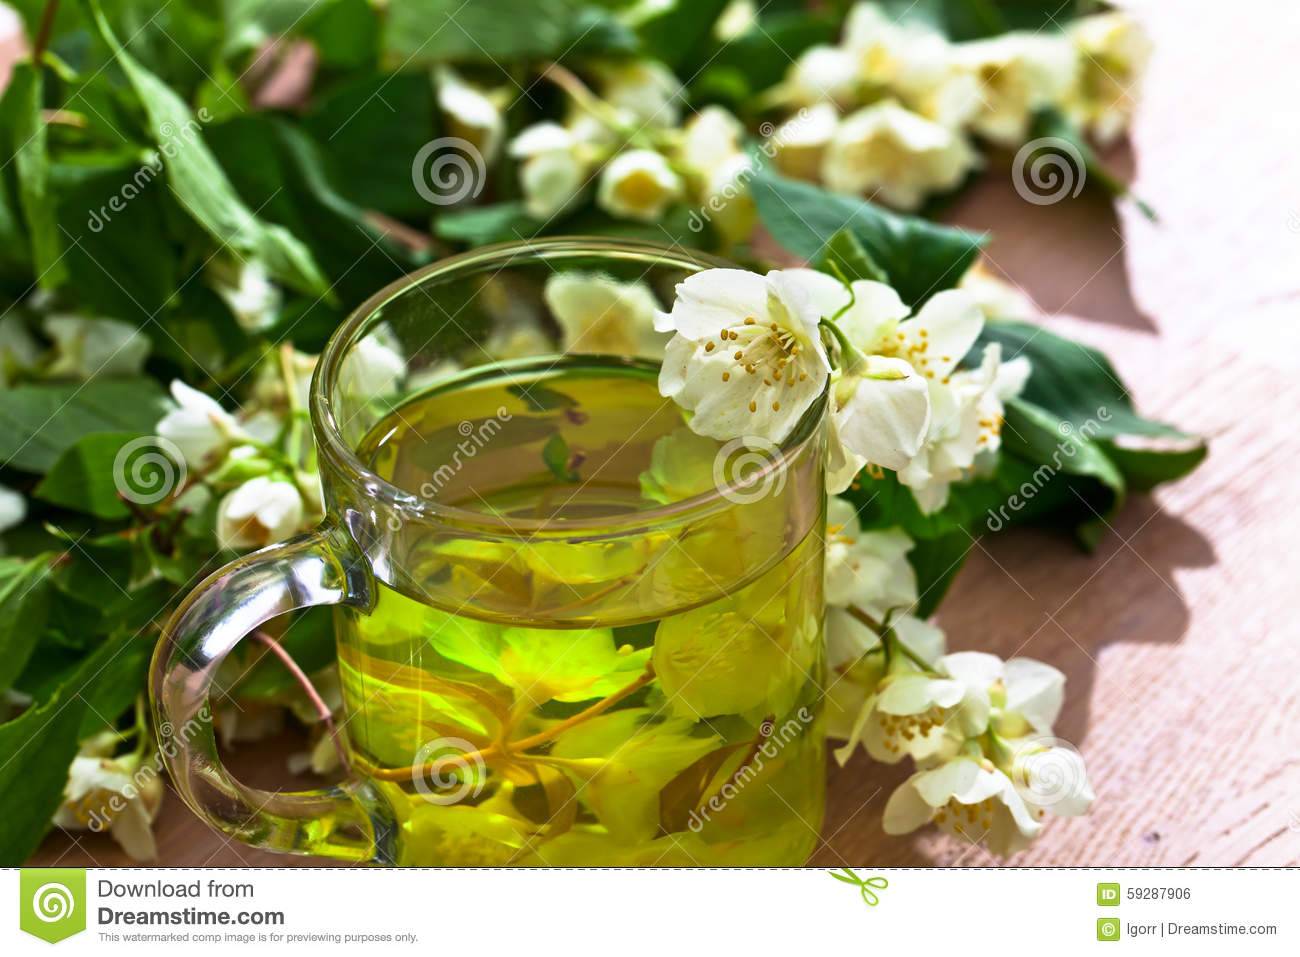 Как сушить жасмин для чая: что собирать, польза и вред цветов, заготовка